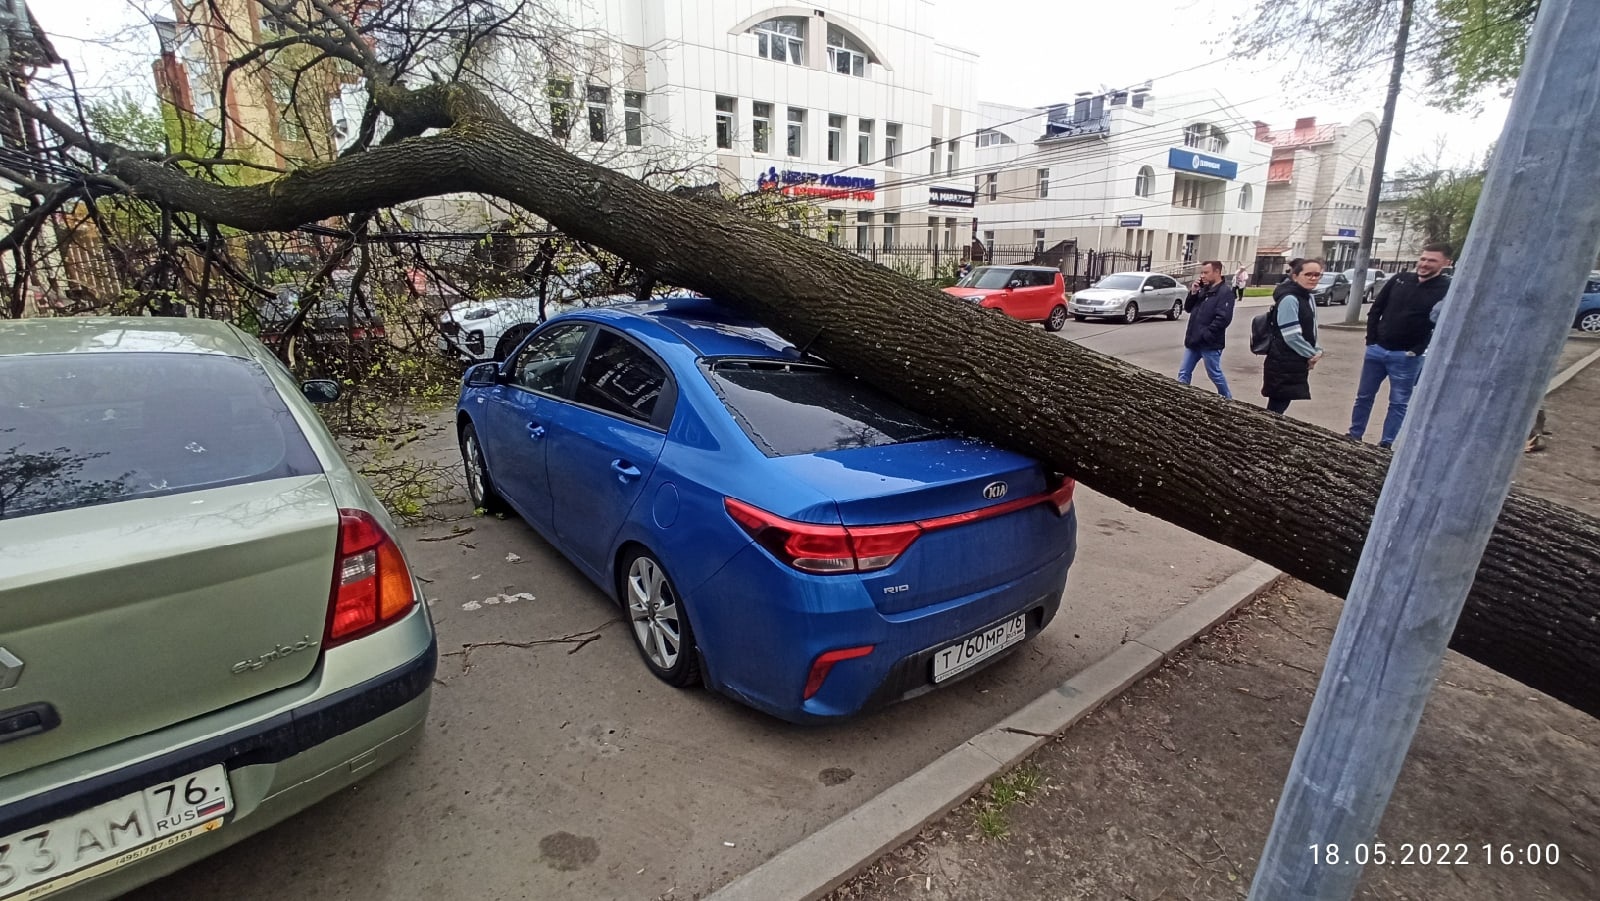  Упавшее в центре Ярославля дерево перекрыло дорогу и помяло машины